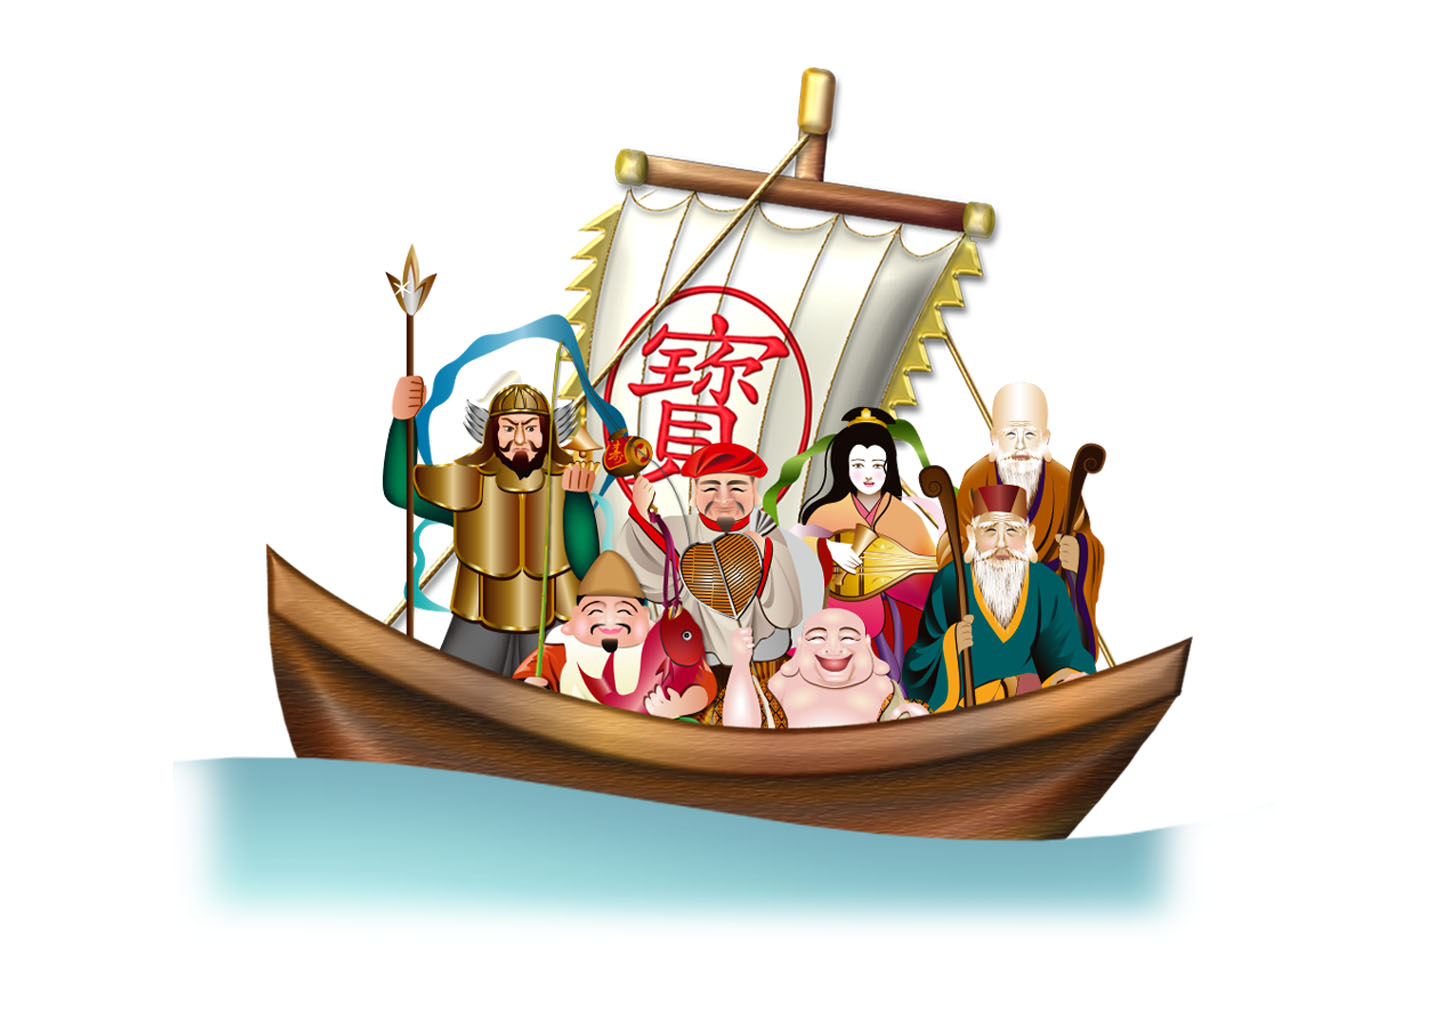 宝船に乗るリアルな七福神の年賀状イラスト